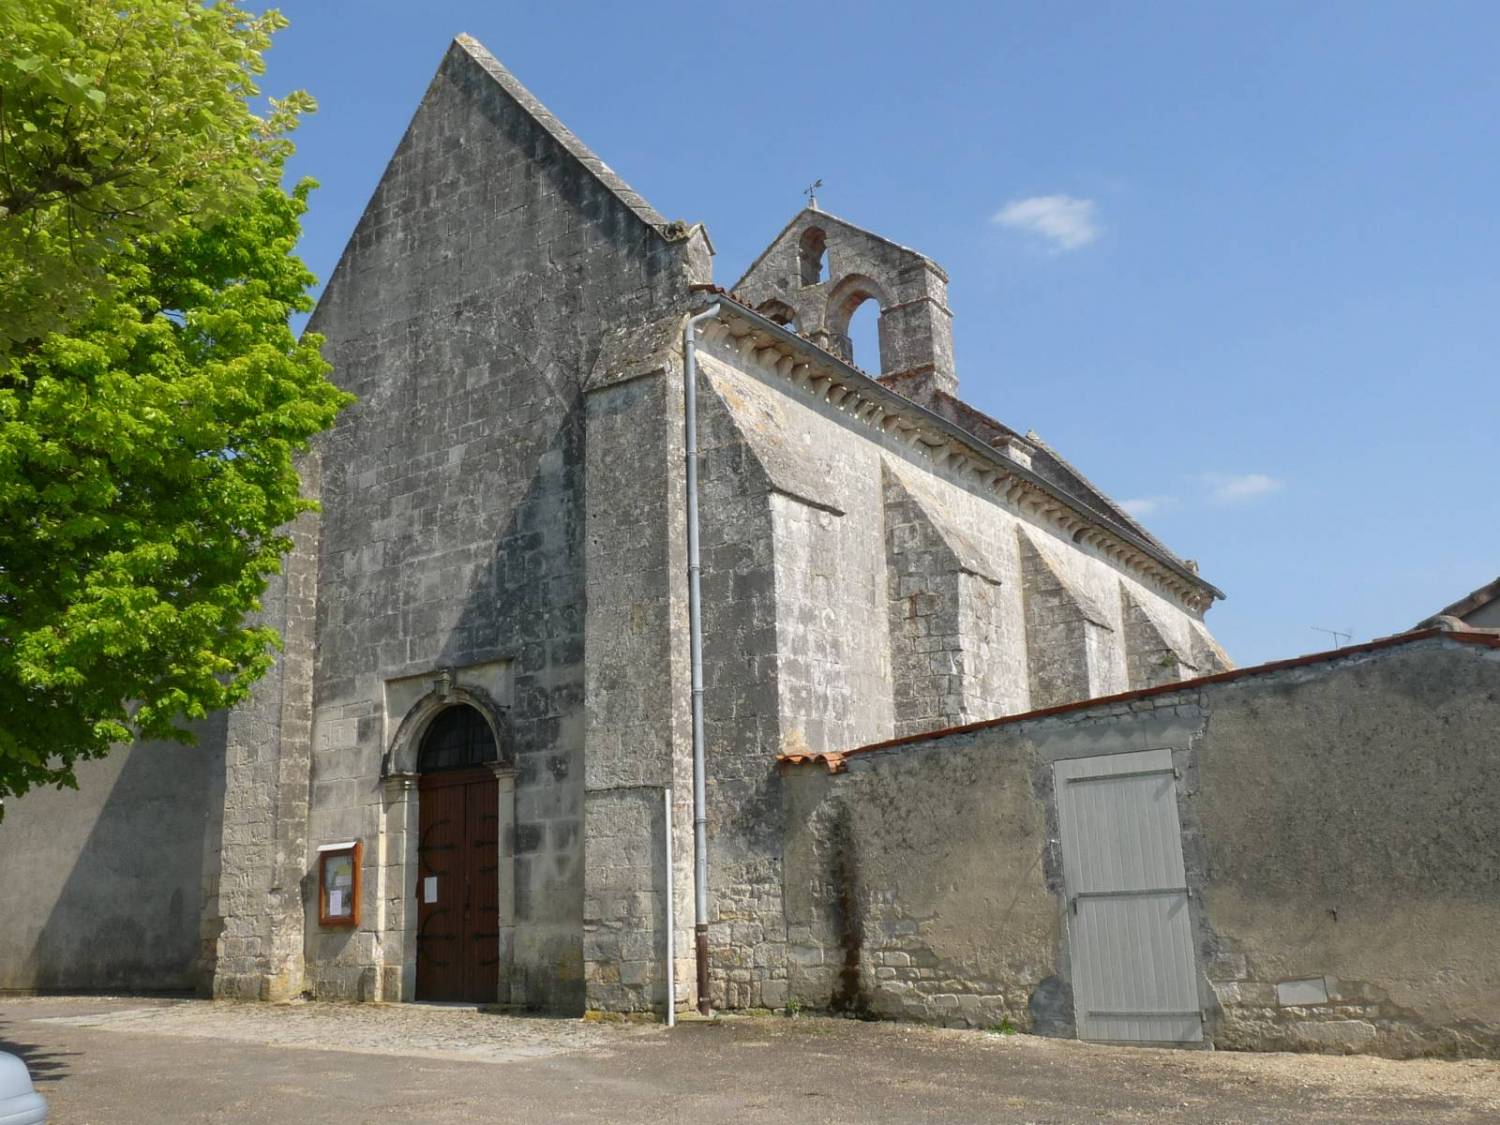 Triac-Lautrait (16) - église Saint-Romain